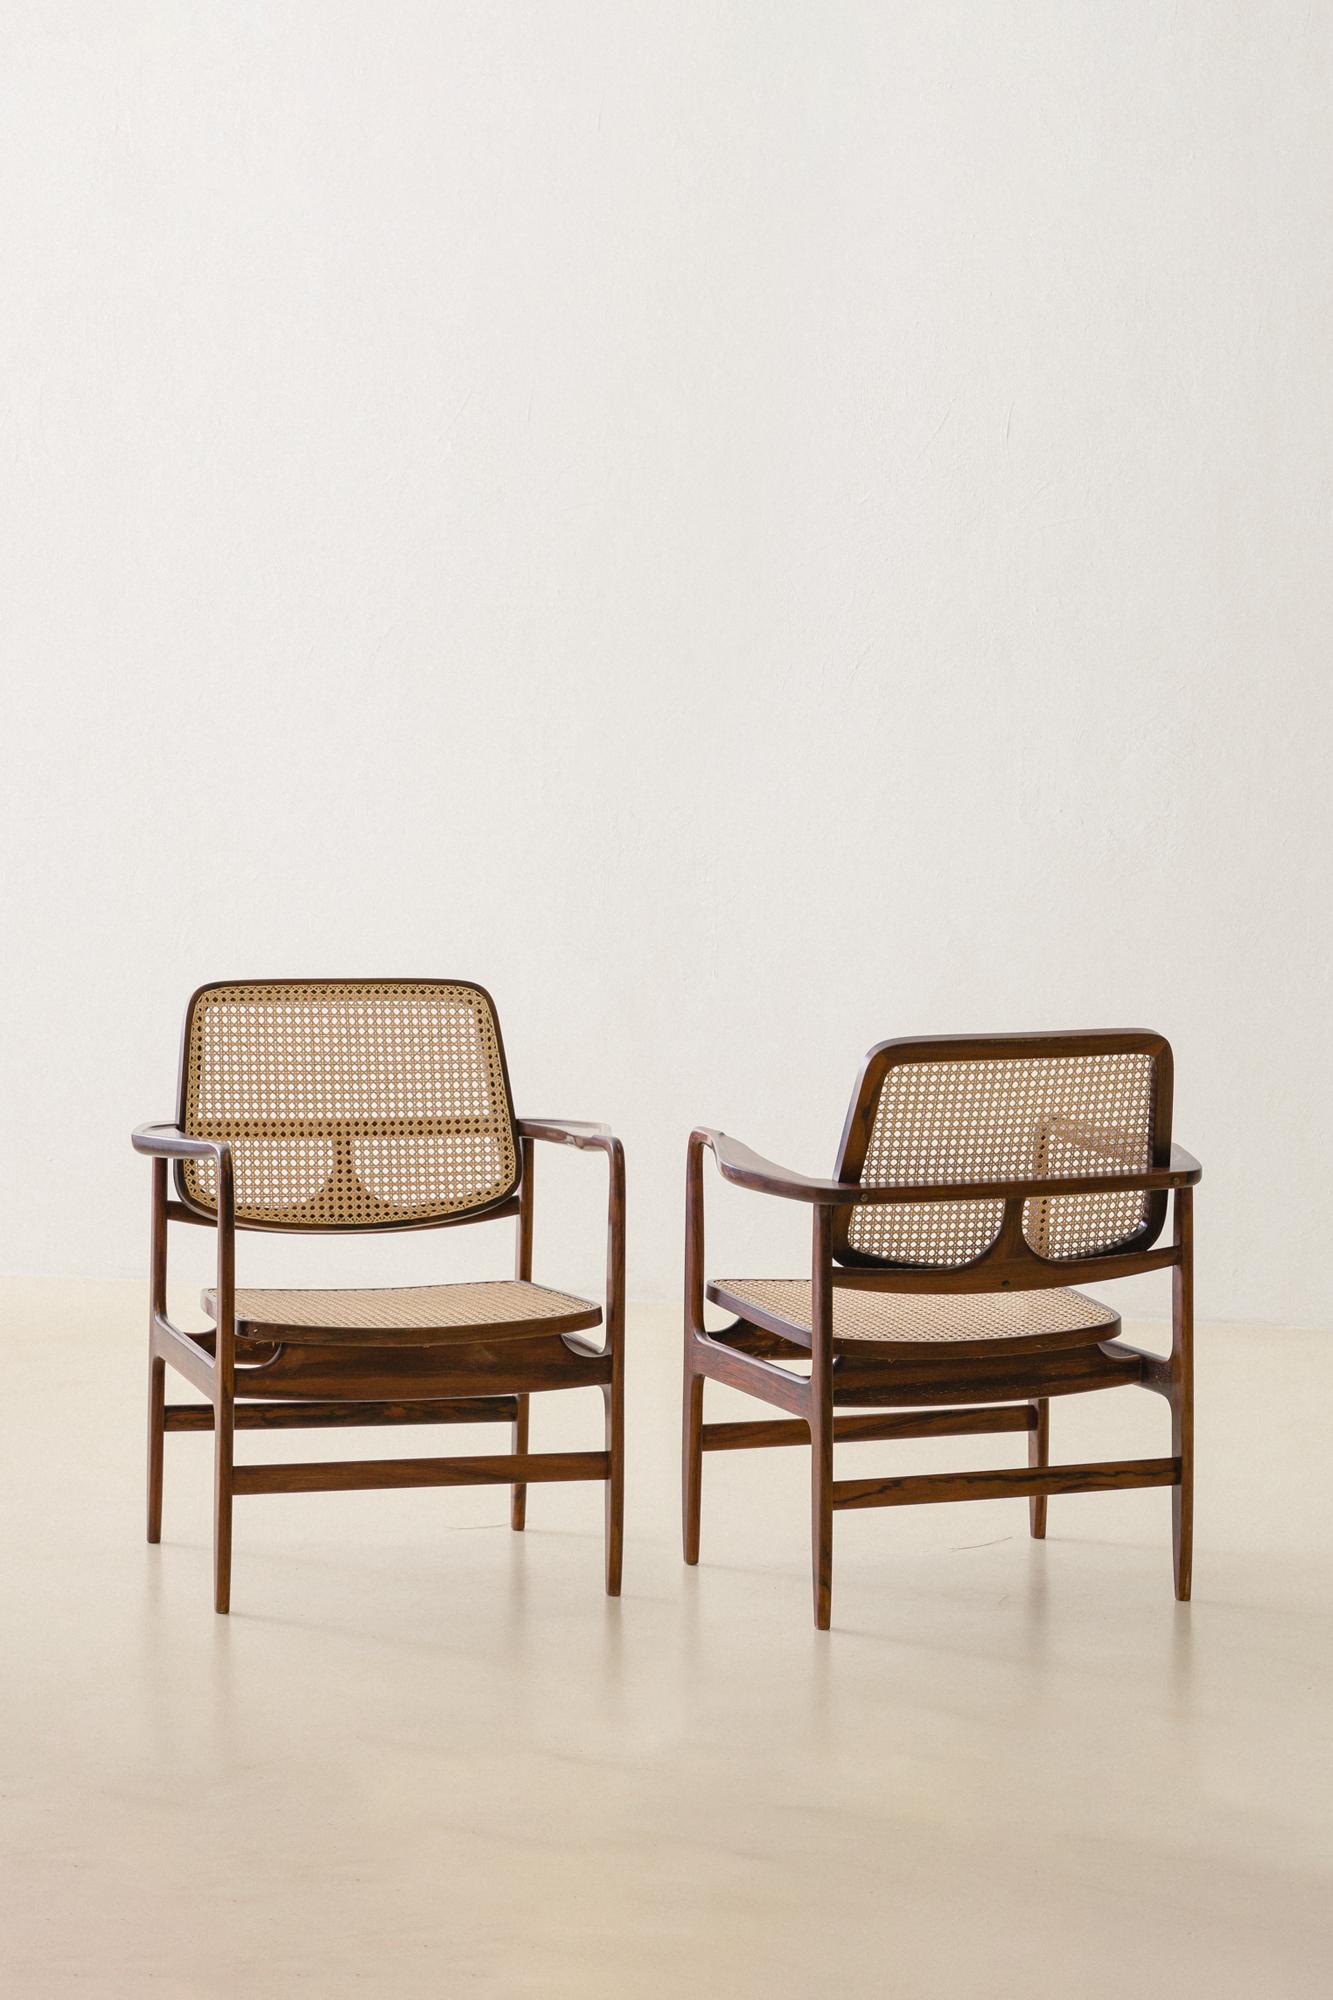 Créé par Sergio Rodrigues (1927-2014) en 1956, le fauteuil Oscar est un hommage à Oscar Niemeyer (1907-2012), l'un des architectes brésiliens les plus importants dans le développement de l'architecture moderne.

Le fauteuil Oscar est l'un des